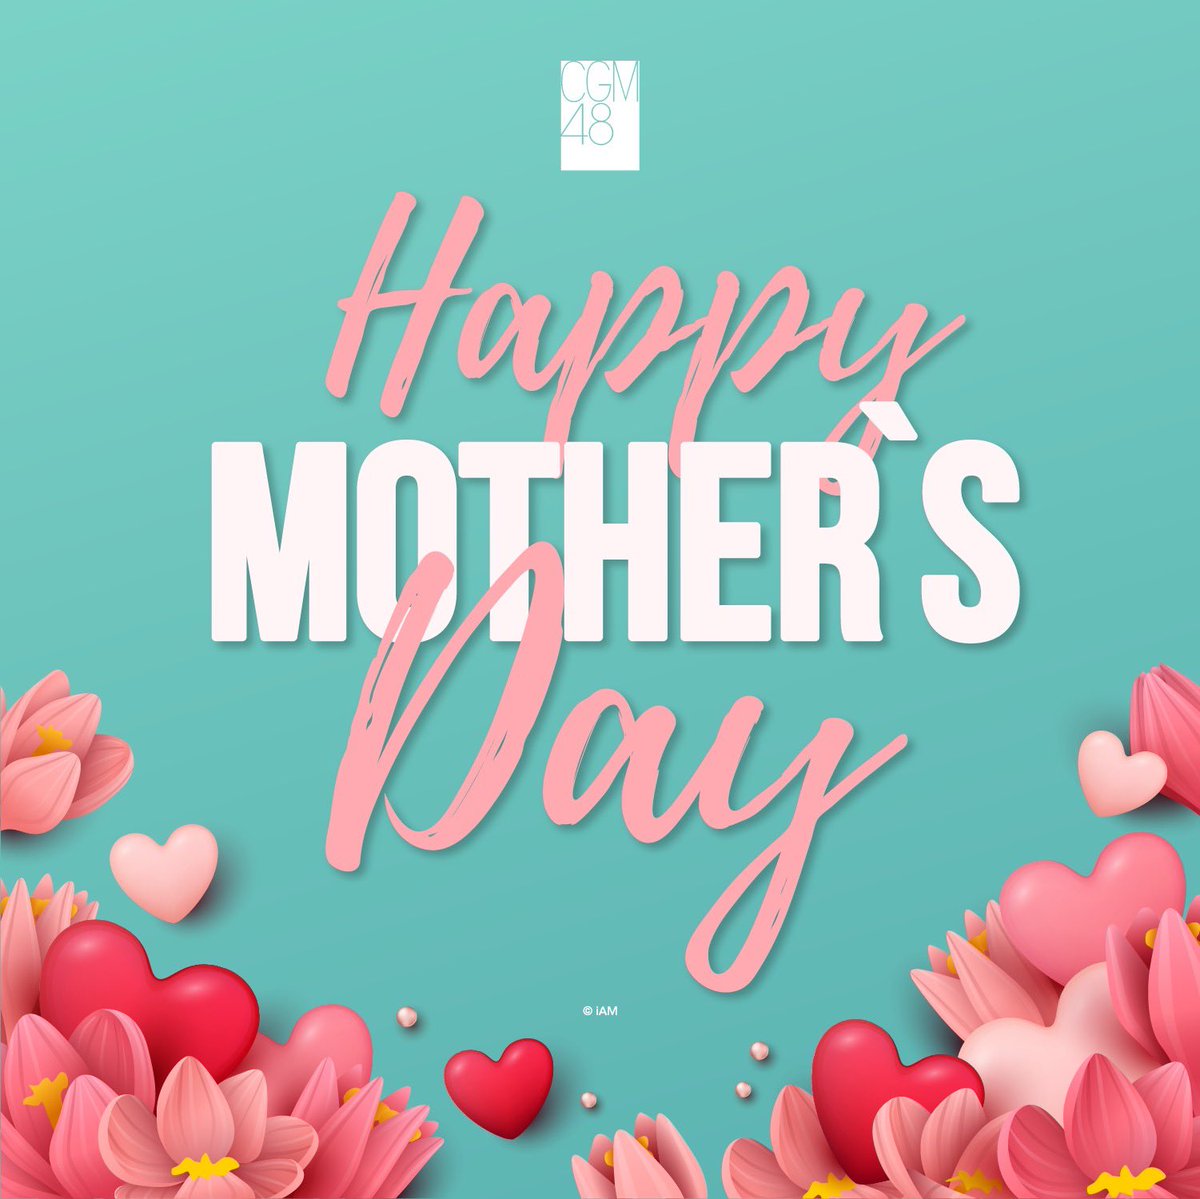 12 สิงหาคม 2022

Happy Mother's Day
สุขสันต์วันแม่ประจำปี 2022 นะคะ

ขอให้ทุกคนมีความสุขกับครอบครัวในวันหยุดยาวเนื่องในวันแม่ด้วยนะคะ

#HappyMothersDay2022
#CGM48